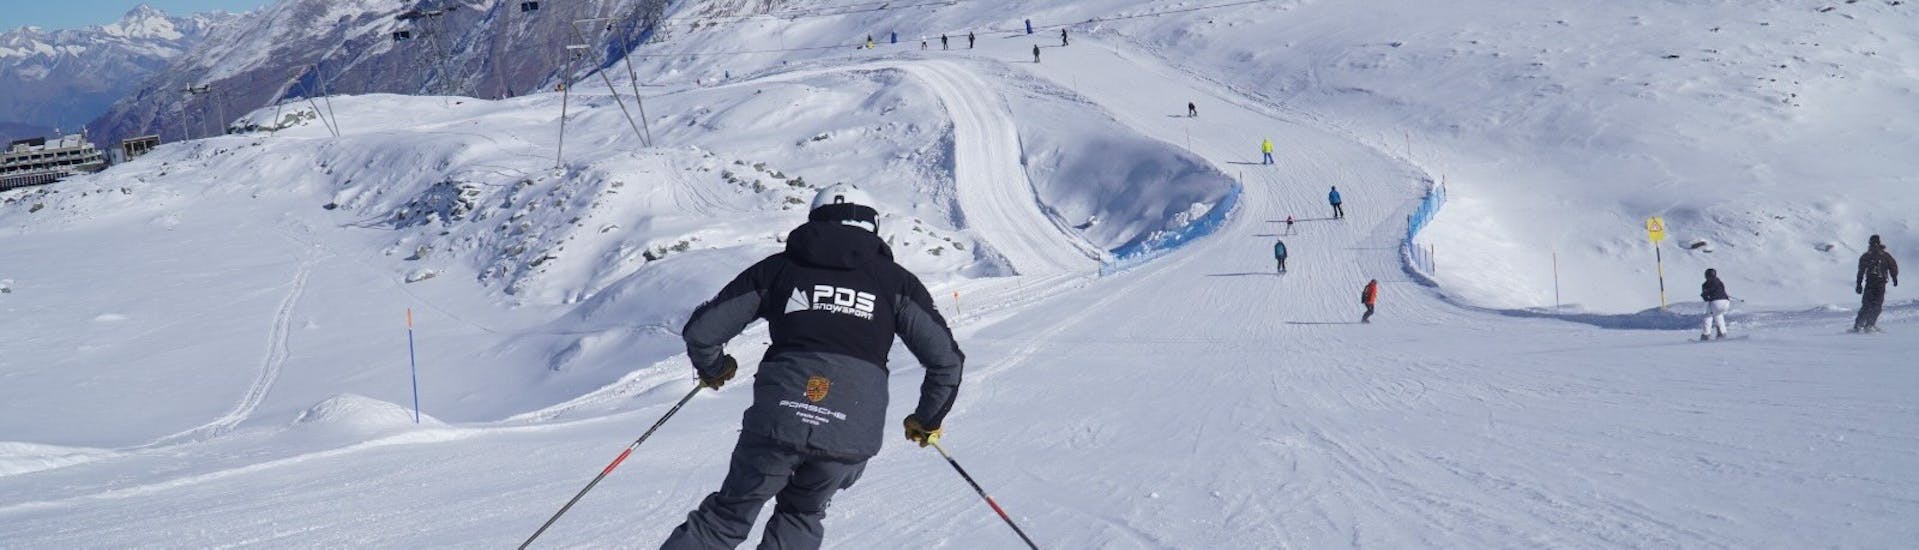 Uno sciatore gareggia in discesa durante le lezioni private di sci per adulti con la scuola di sci PDS Snowsports.